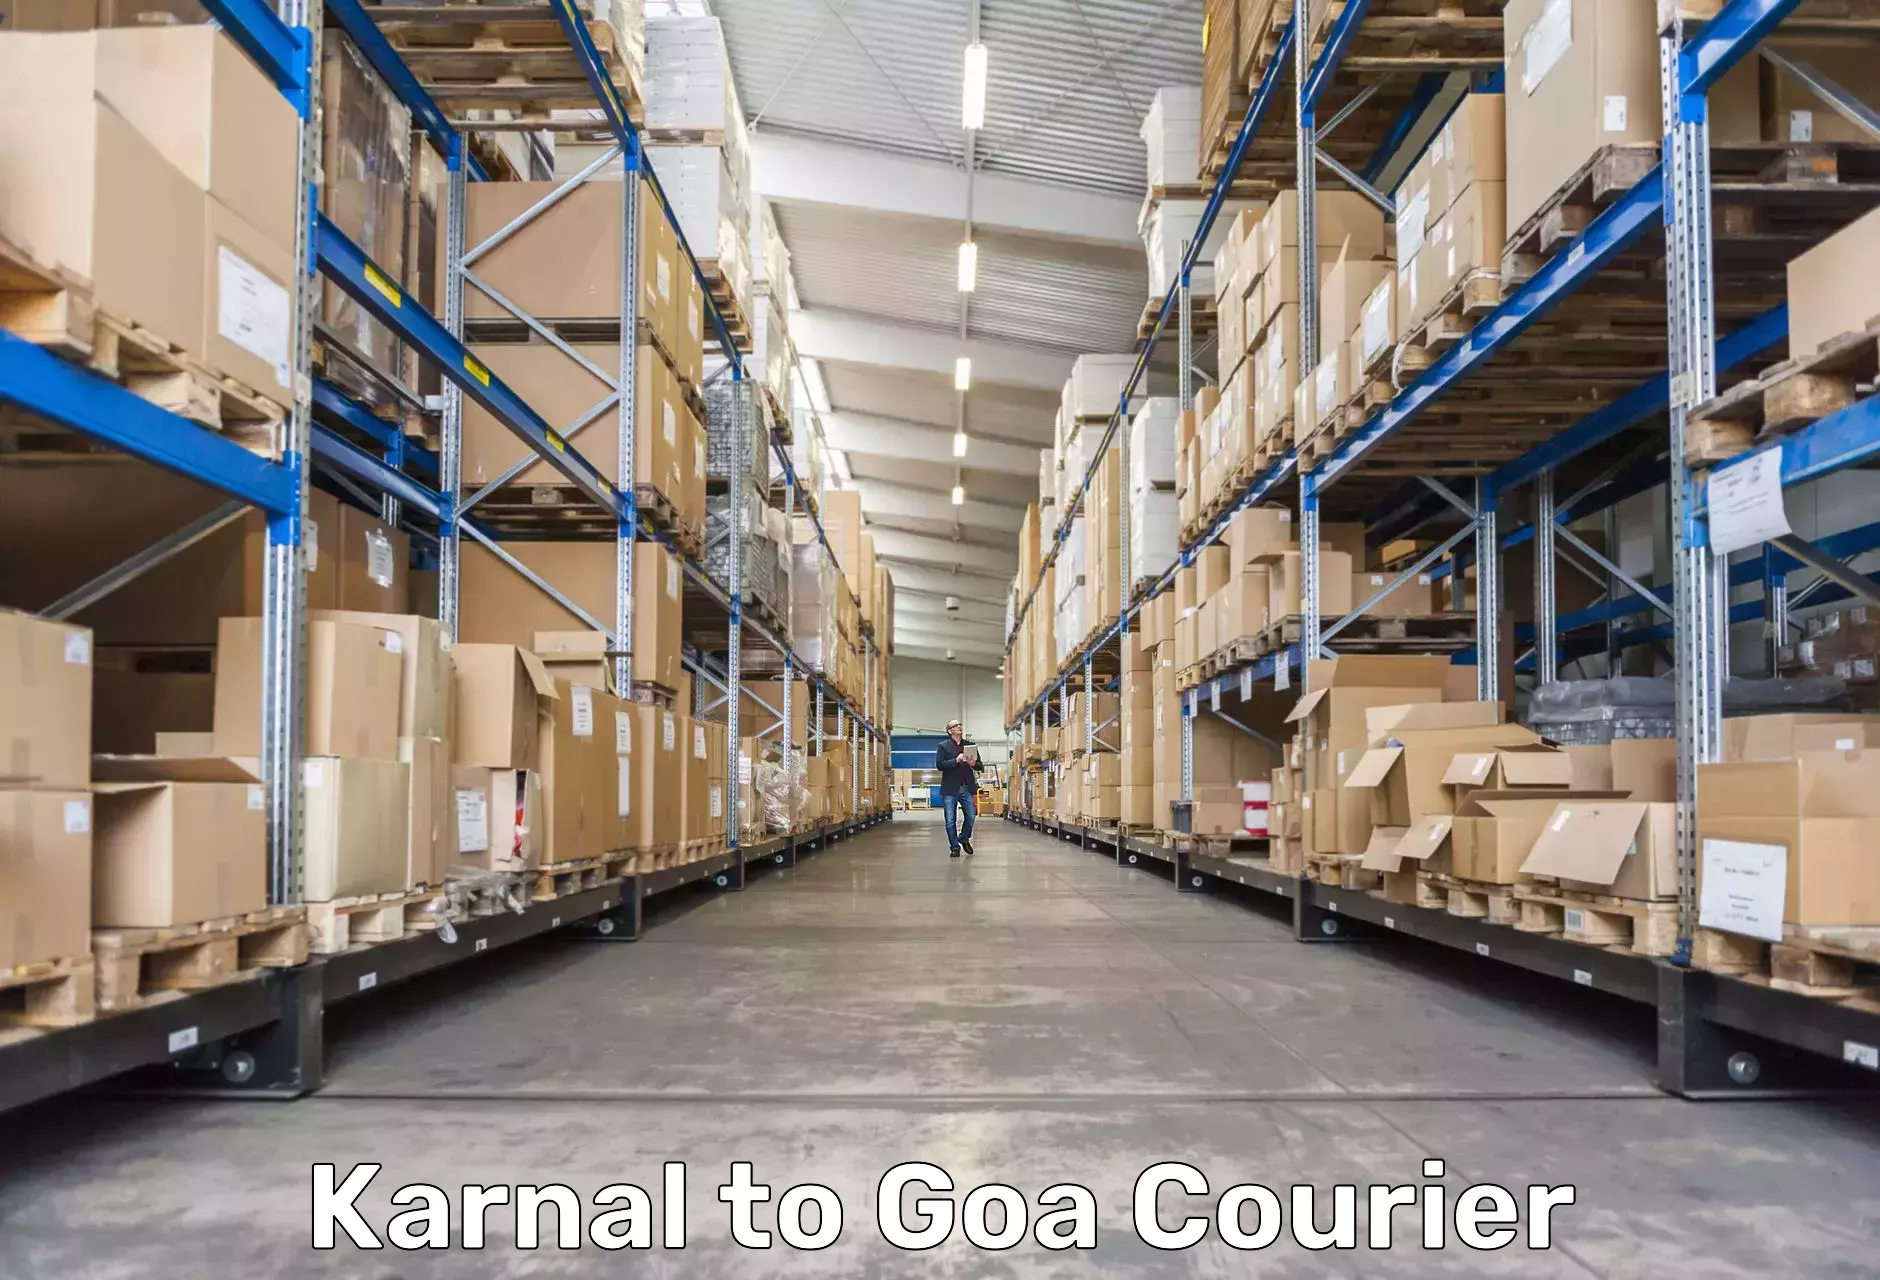 Door-to-door freight service Karnal to Panjim